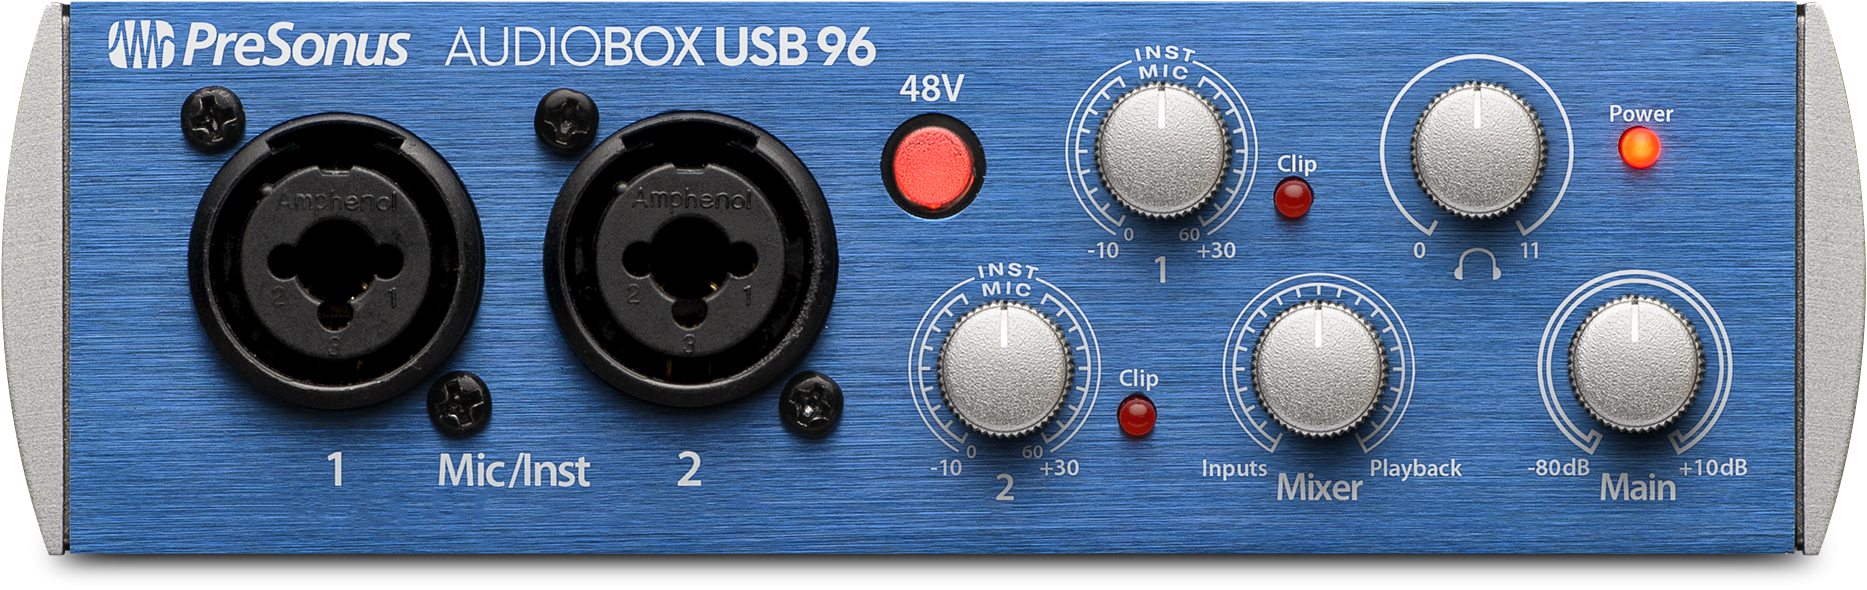 Presonus AudioBox USB 96 | 305broadcast